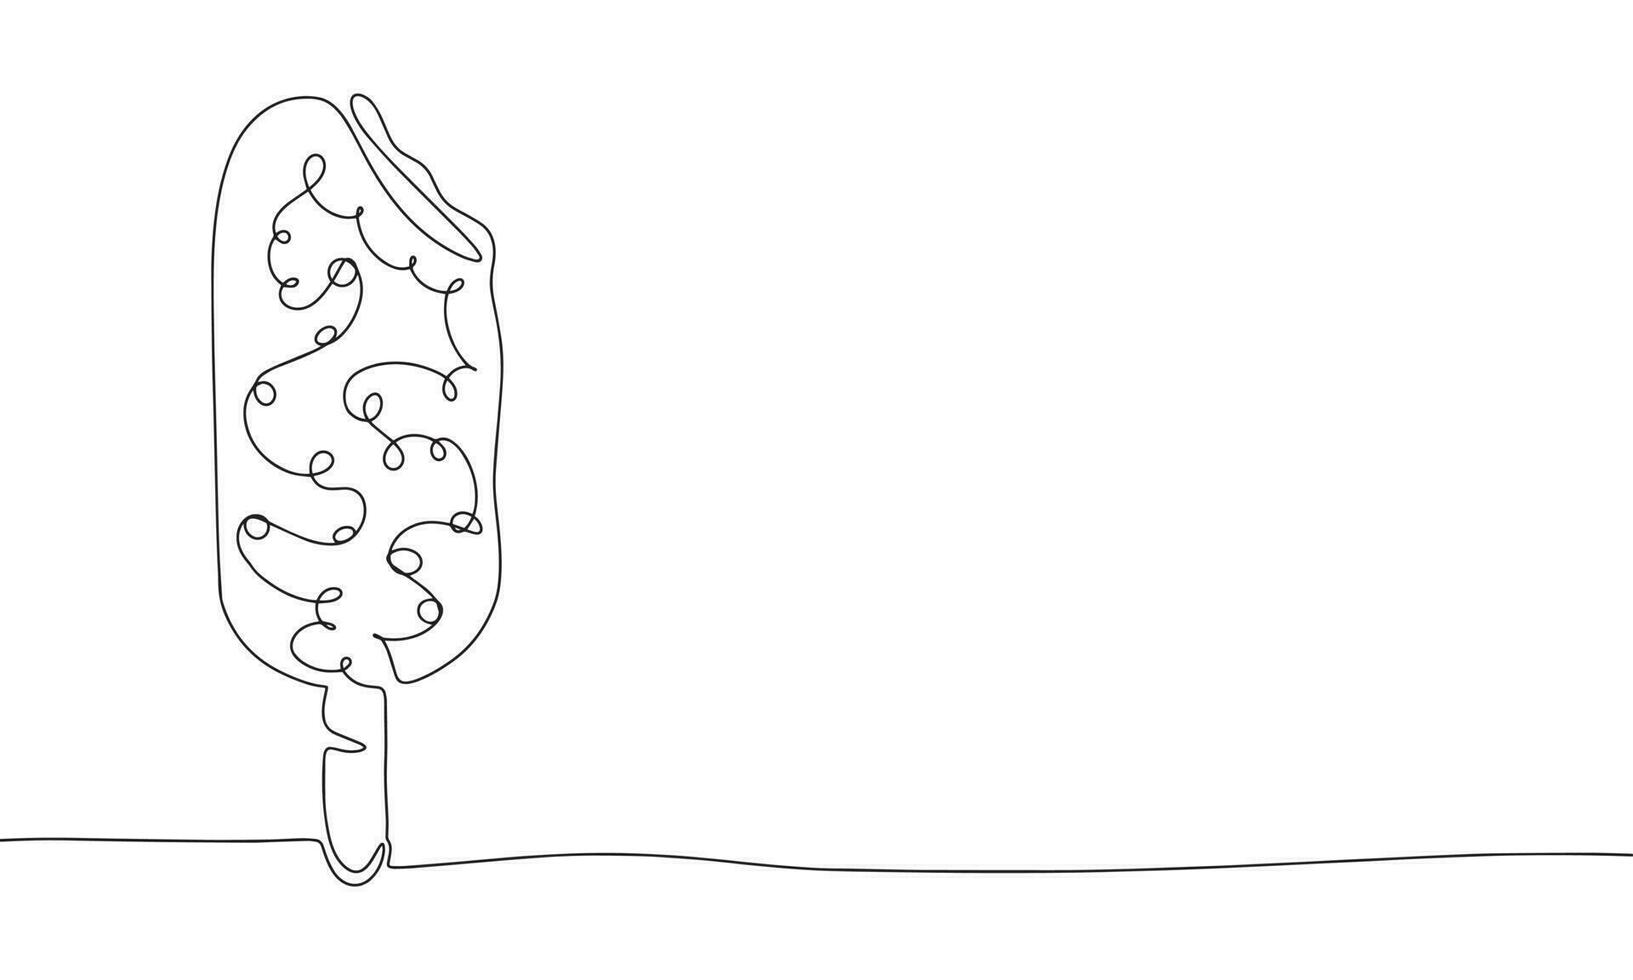 Eis Sahne wie einer Linie Zeichnung Banner. kontinuierlich Hand gezeichnet minimalistisch Minimalismus Design isoliert auf Weiß Hintergrund Vektor Illustration.